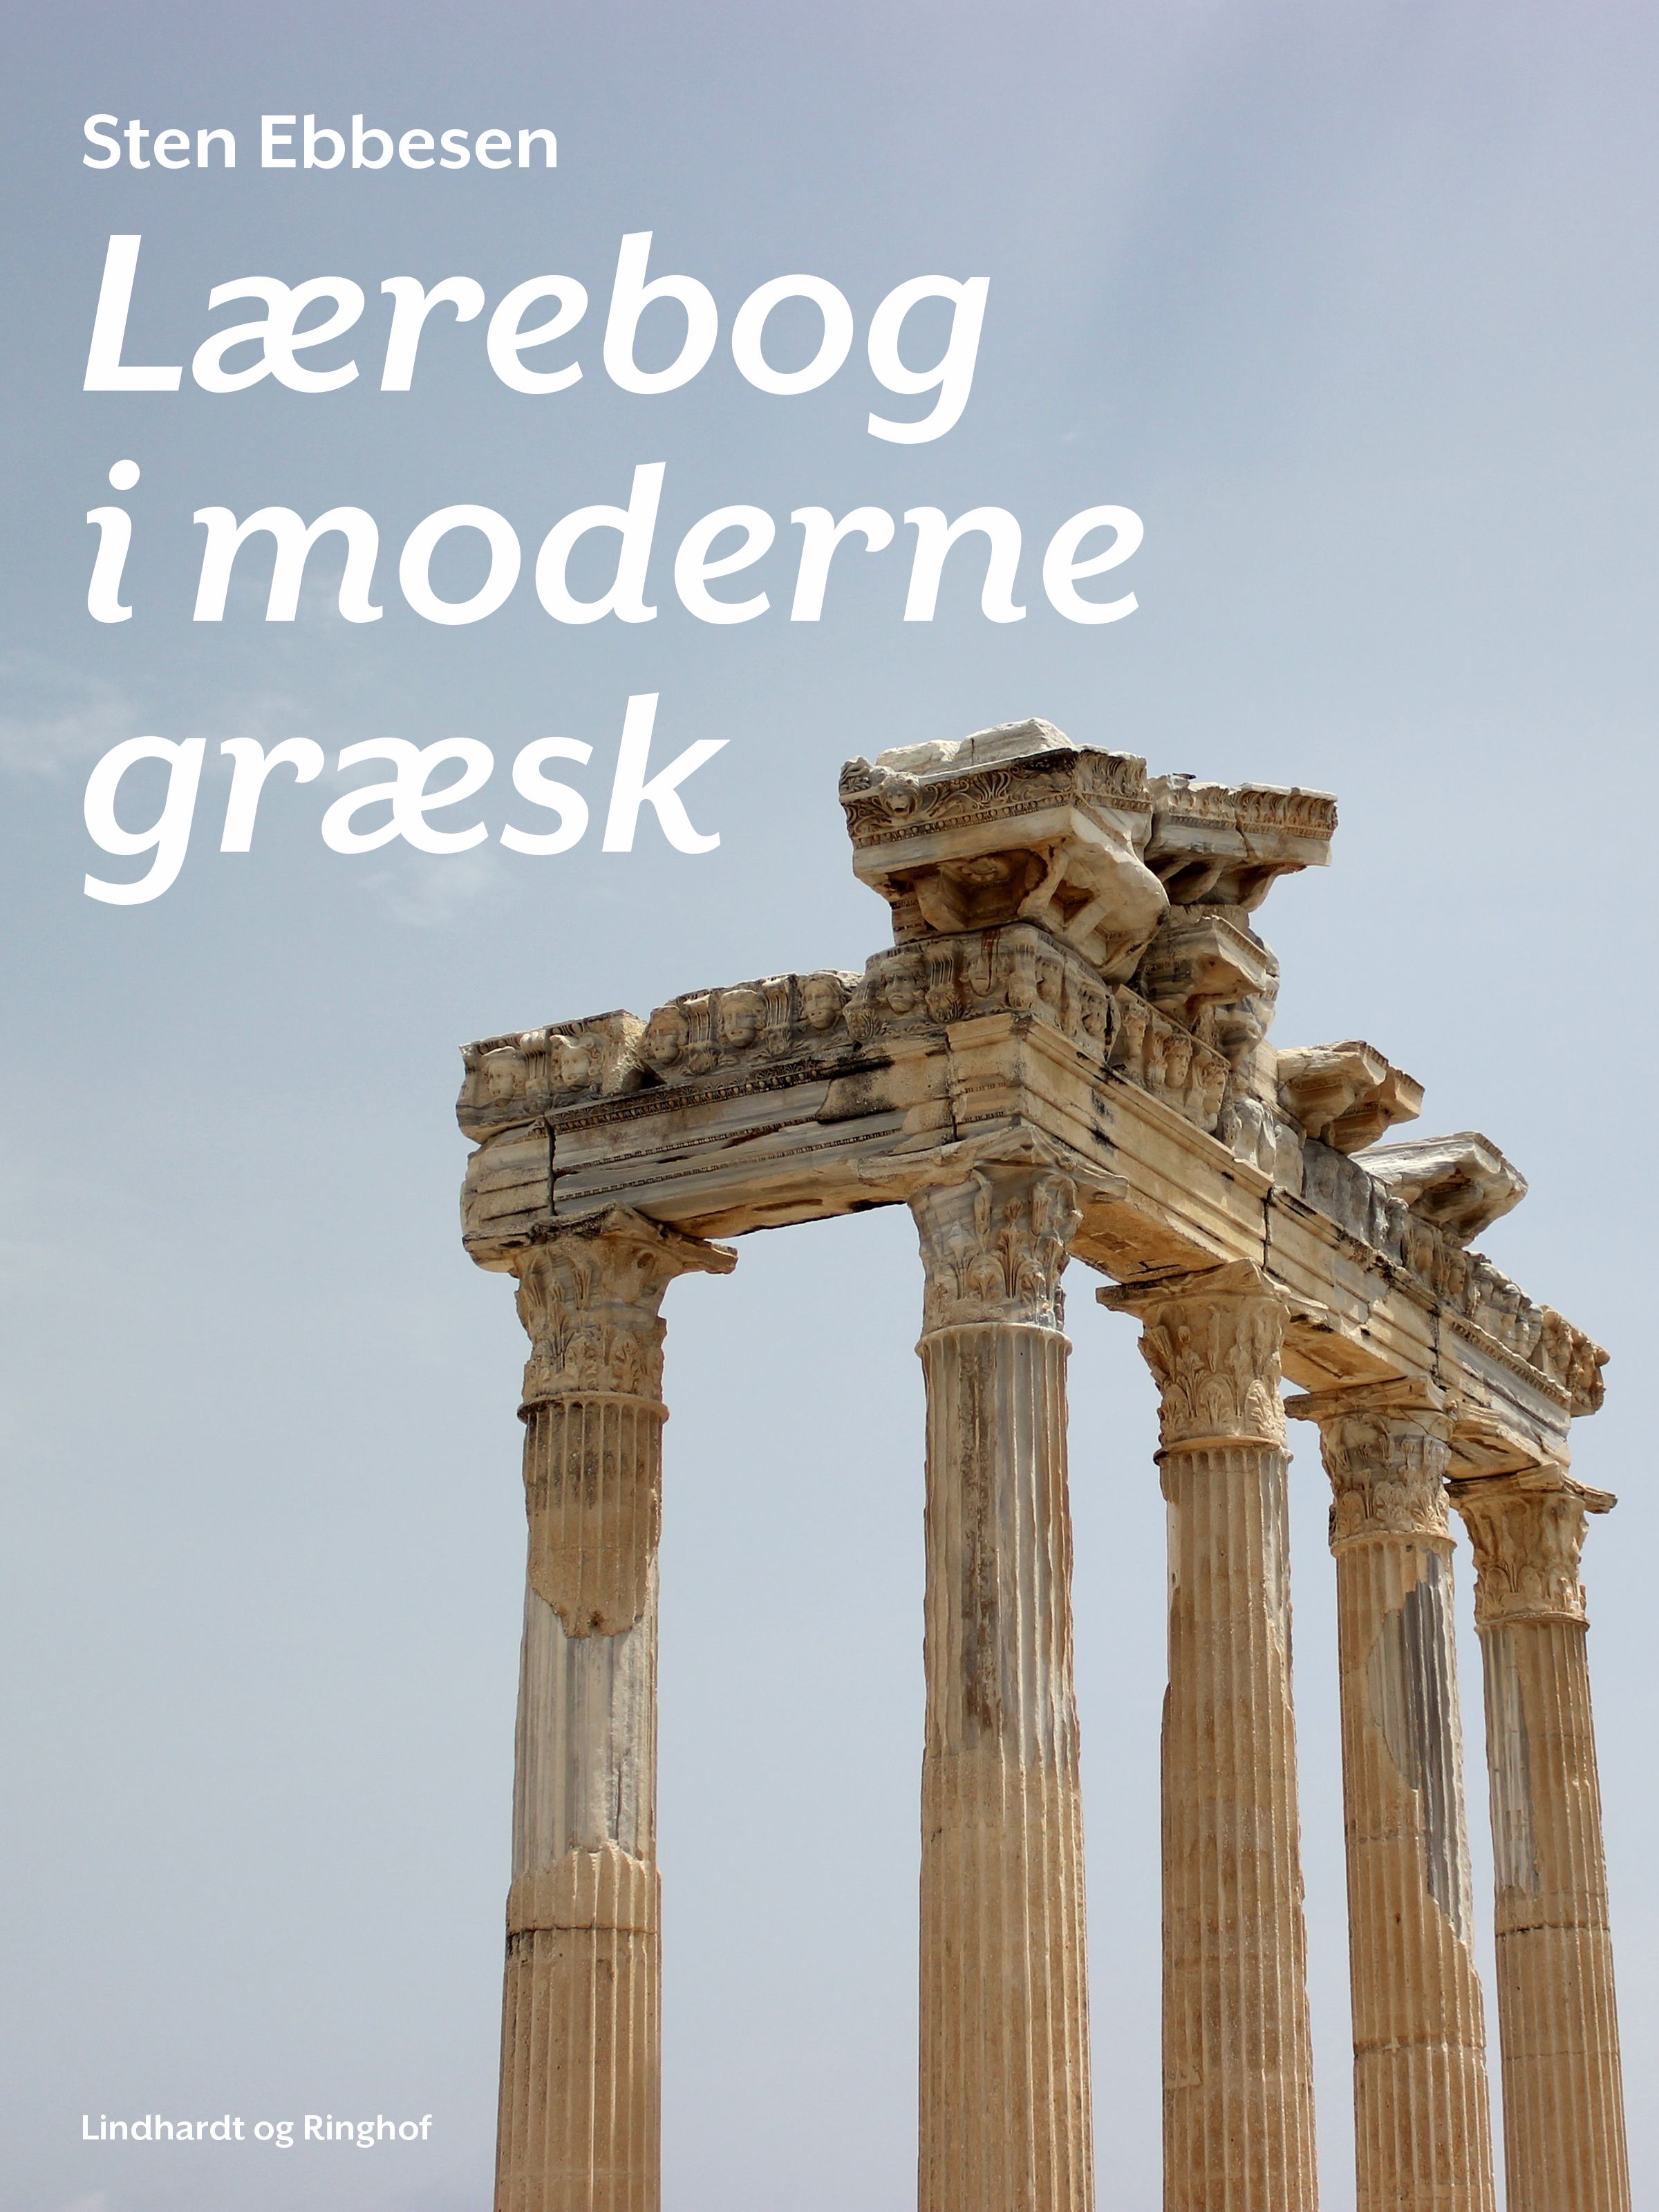 Lærebog i moderne græsk, e-bog af Sten Ebbesen